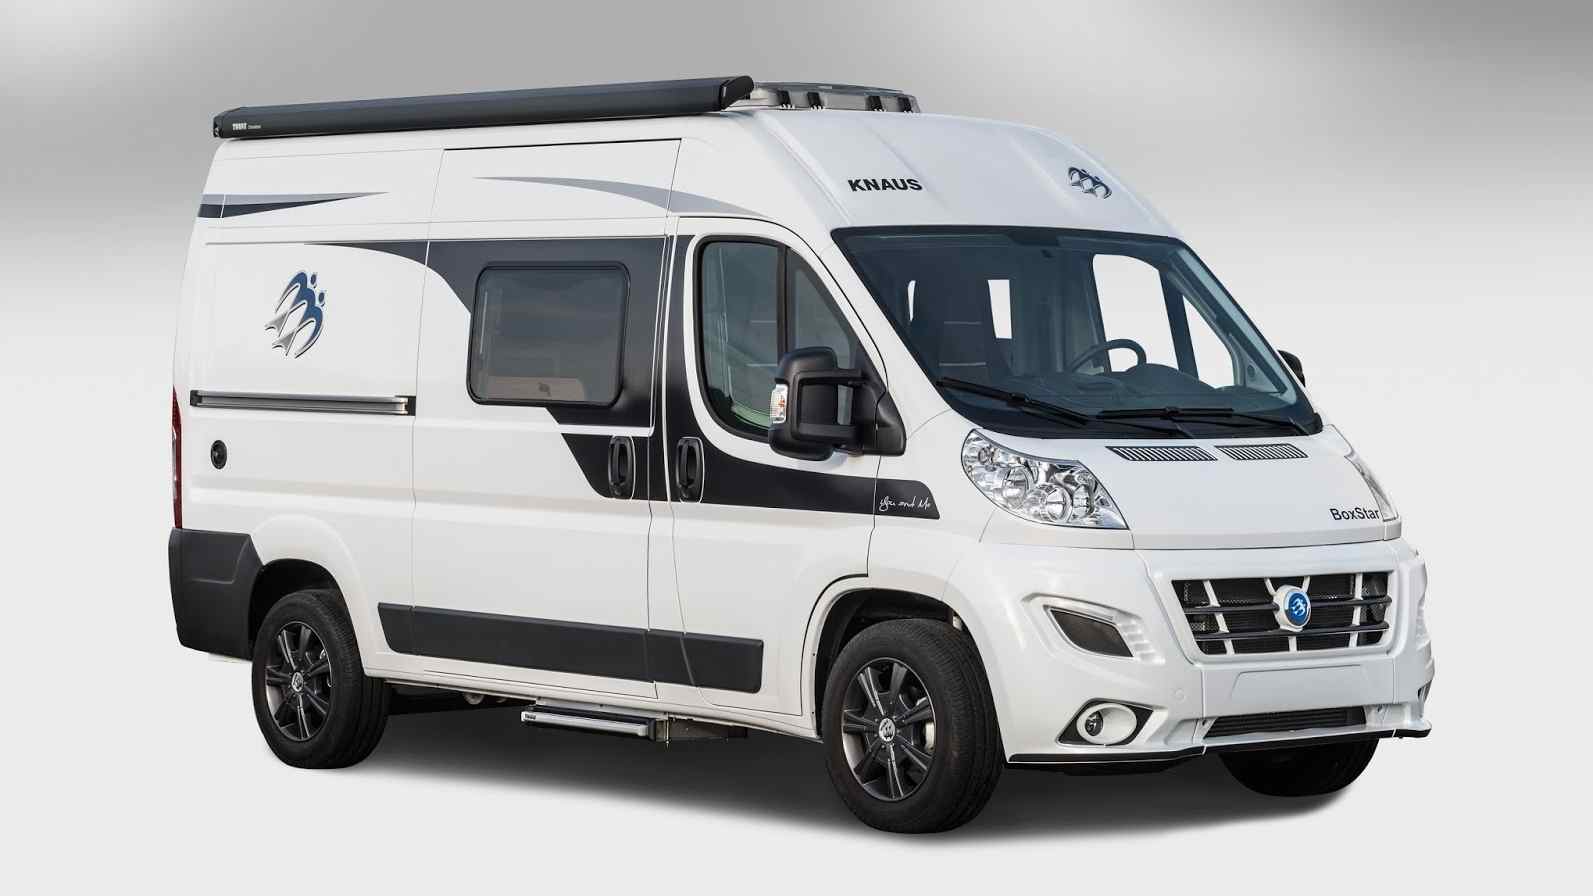 Wohnmobile 2014: Kastenwagen ab rund 39.000 Euro